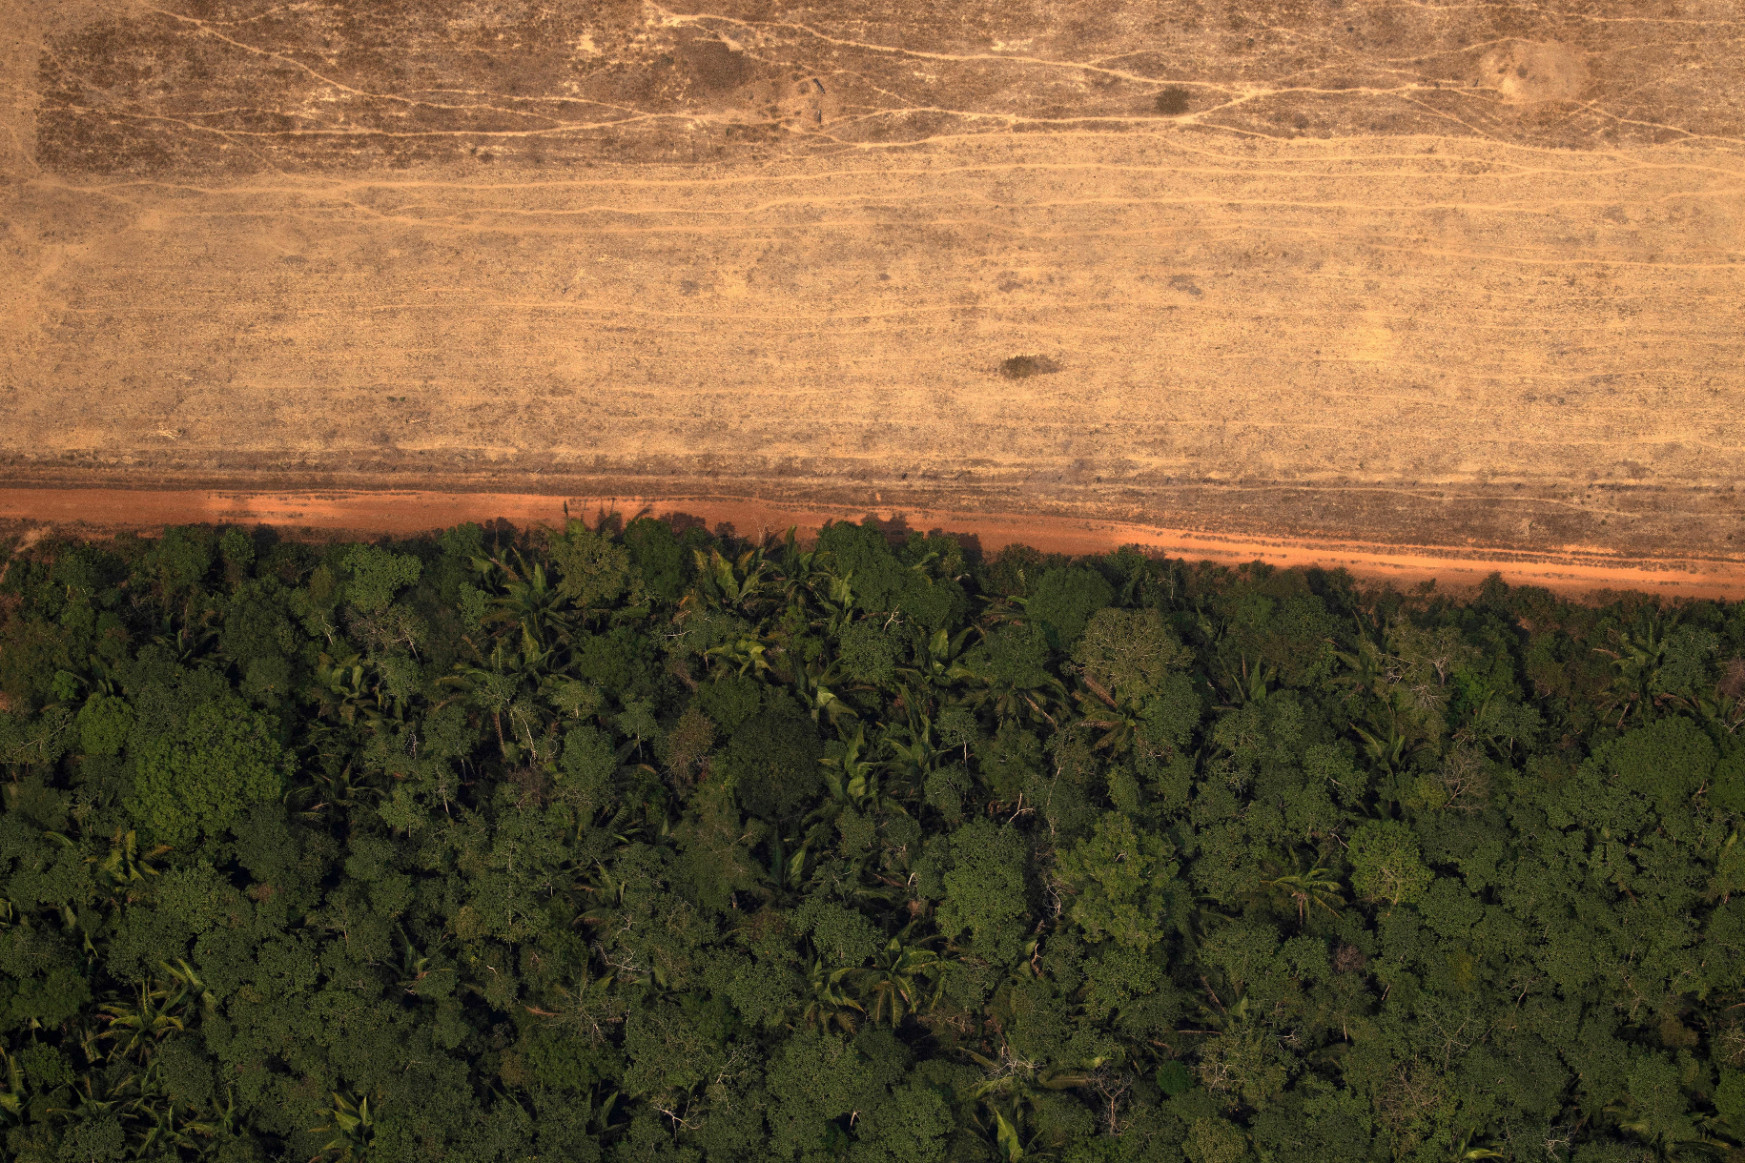 Brazília egymilliárd dolláros külföldi támogatást kér az erdőirtás visszaszorítására az Amazonas térségében